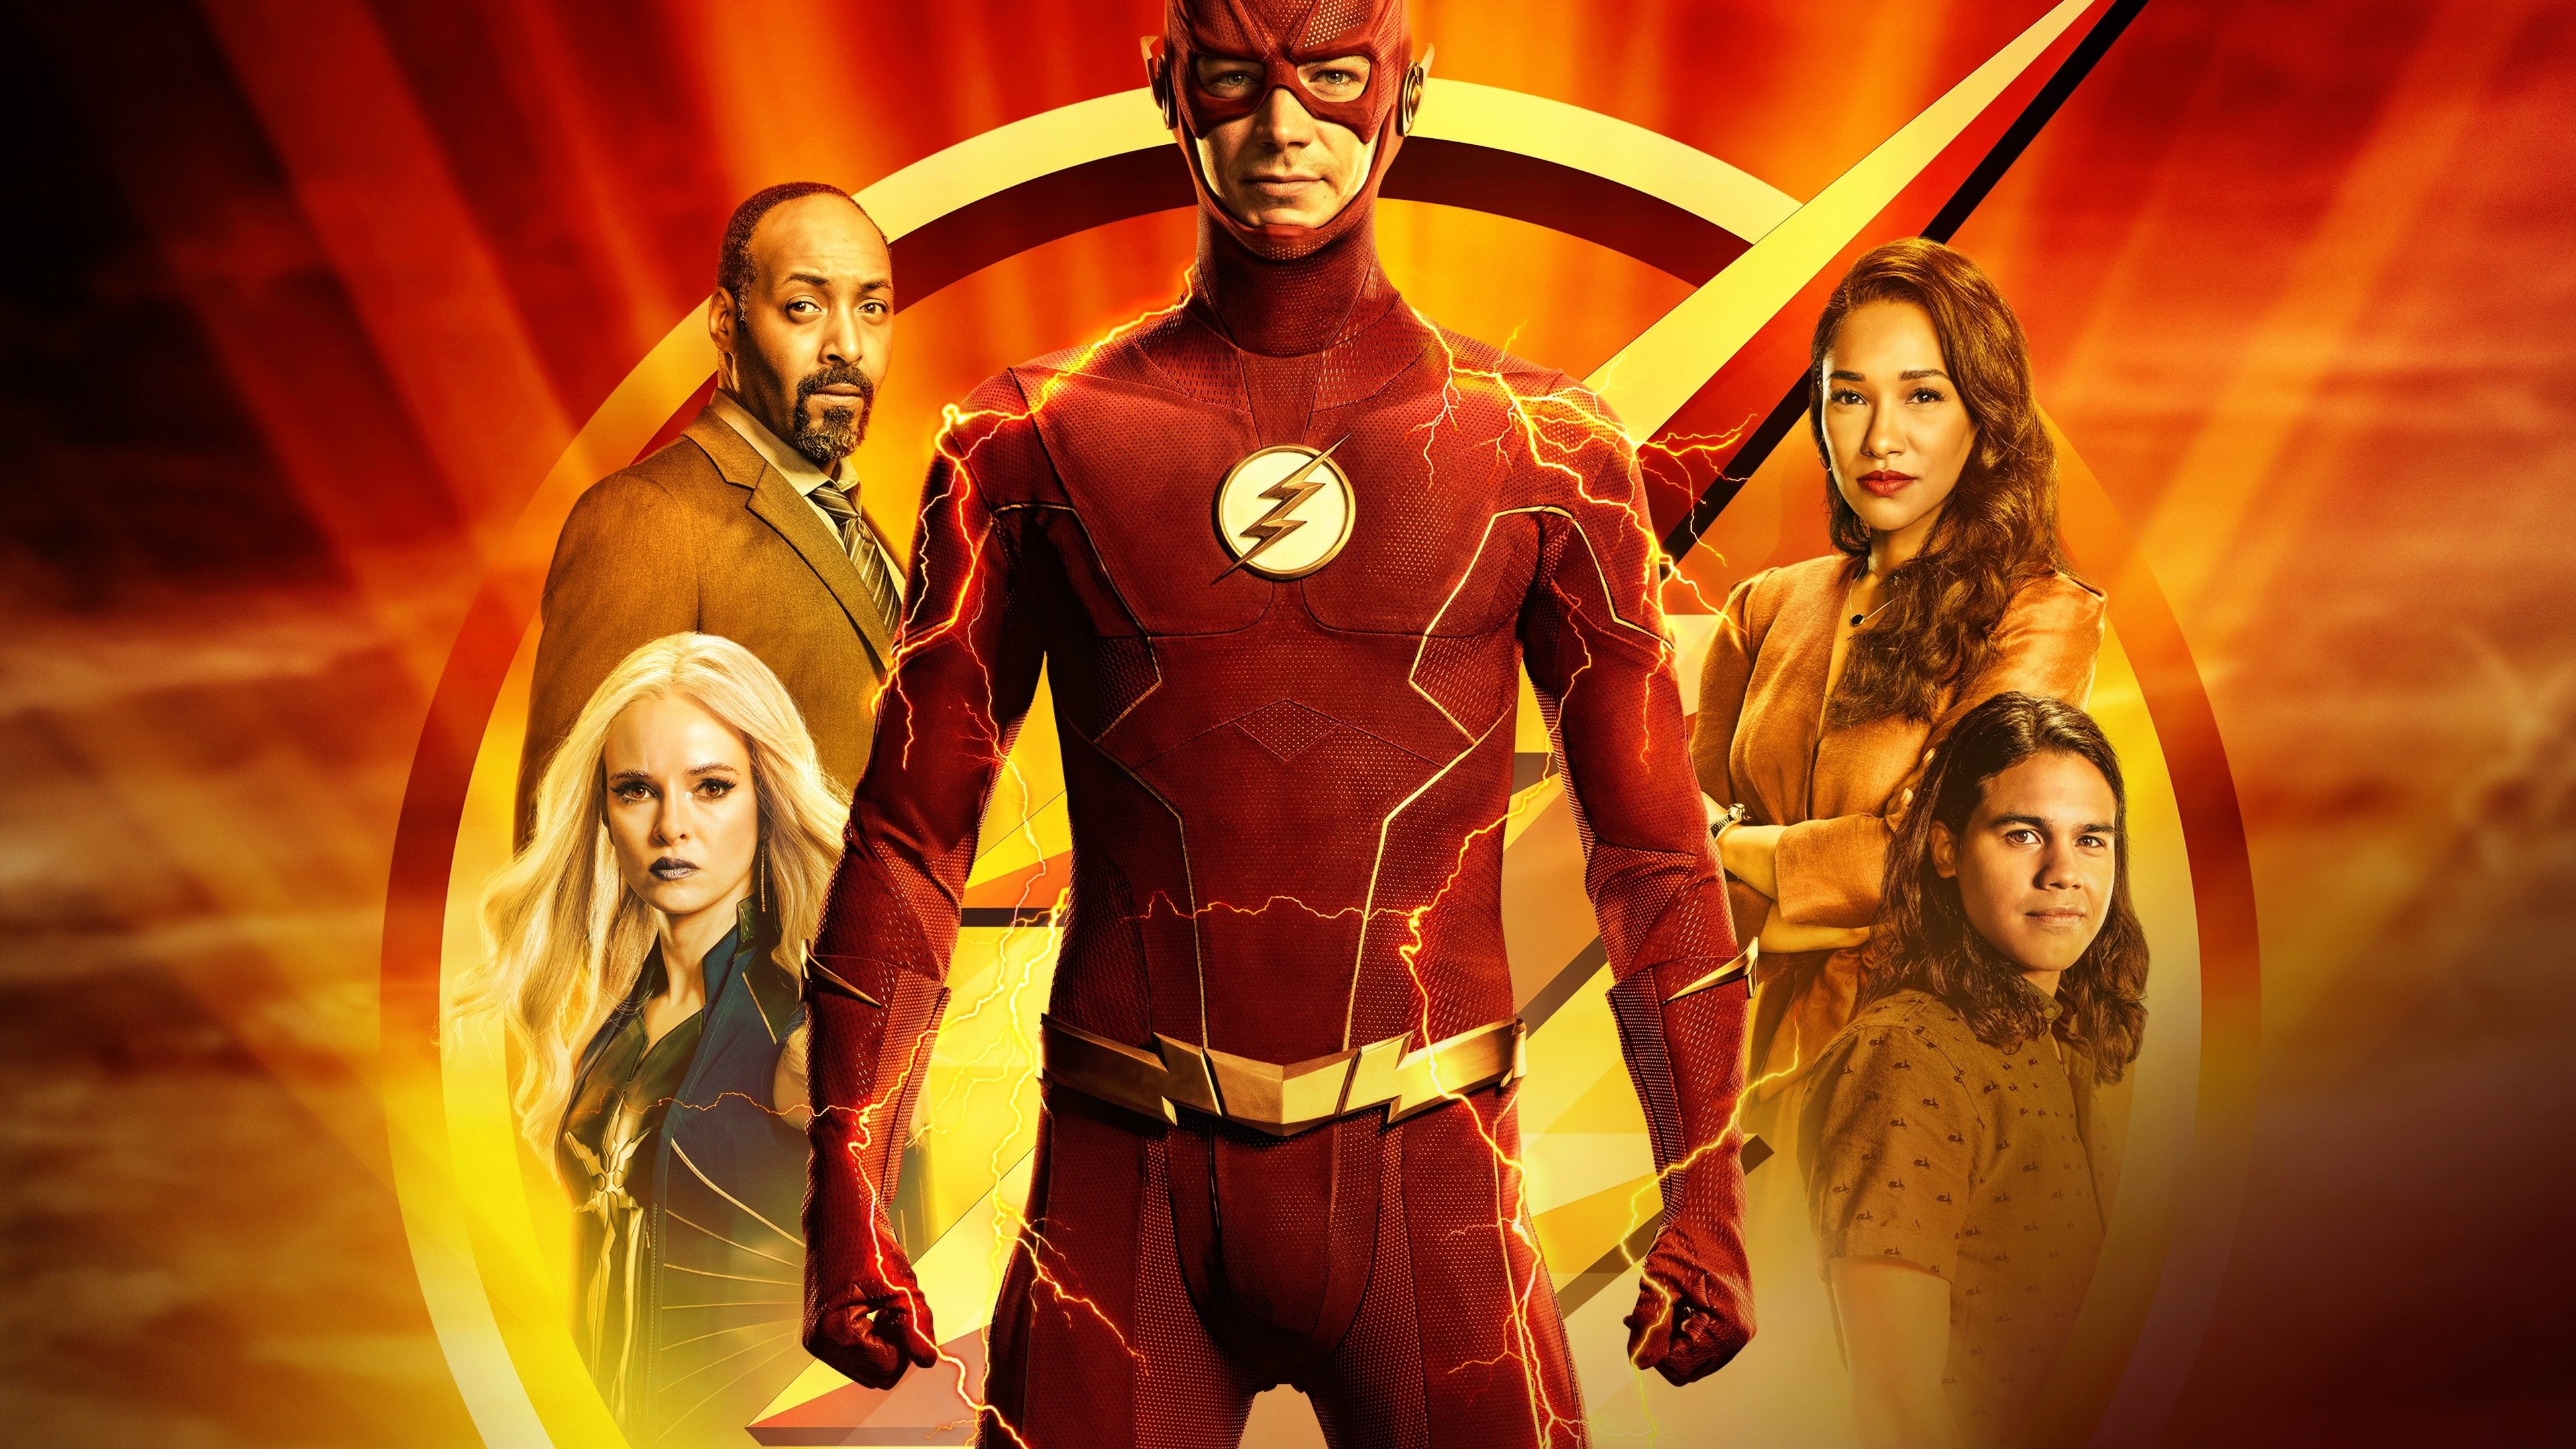 เดอะแฟลช วีรบุรุษเหนือแสง The Flash, Hero of the Light ออนไลน์โดยสมบูรณ์ในปี 2014